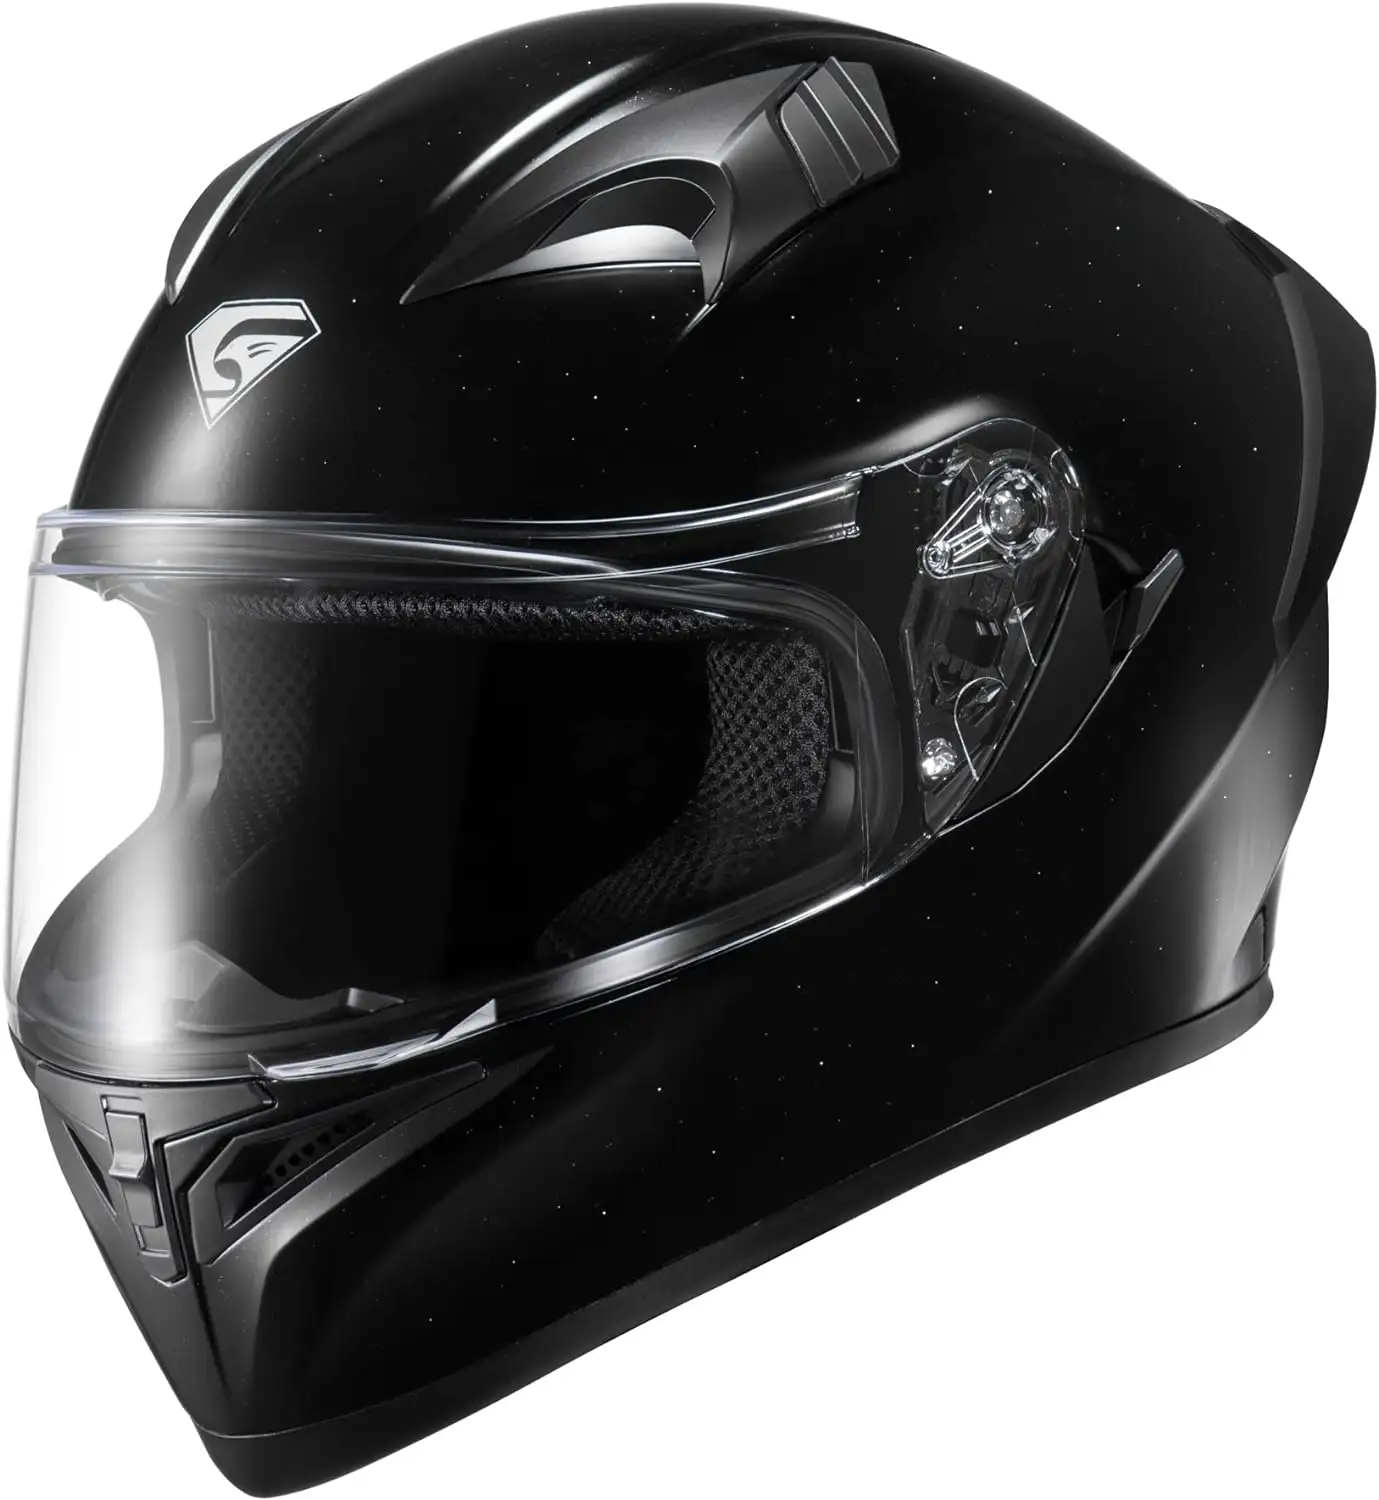 خوذة دراجة نارية تغطي الوجه بالكامل مع حاجب داخلي مخفي معتمدة من وزارة النقل (DOT) للدراجات النارية ATV Cruiser سكوتر (مرصع بالنجوم ليلية، صغير)